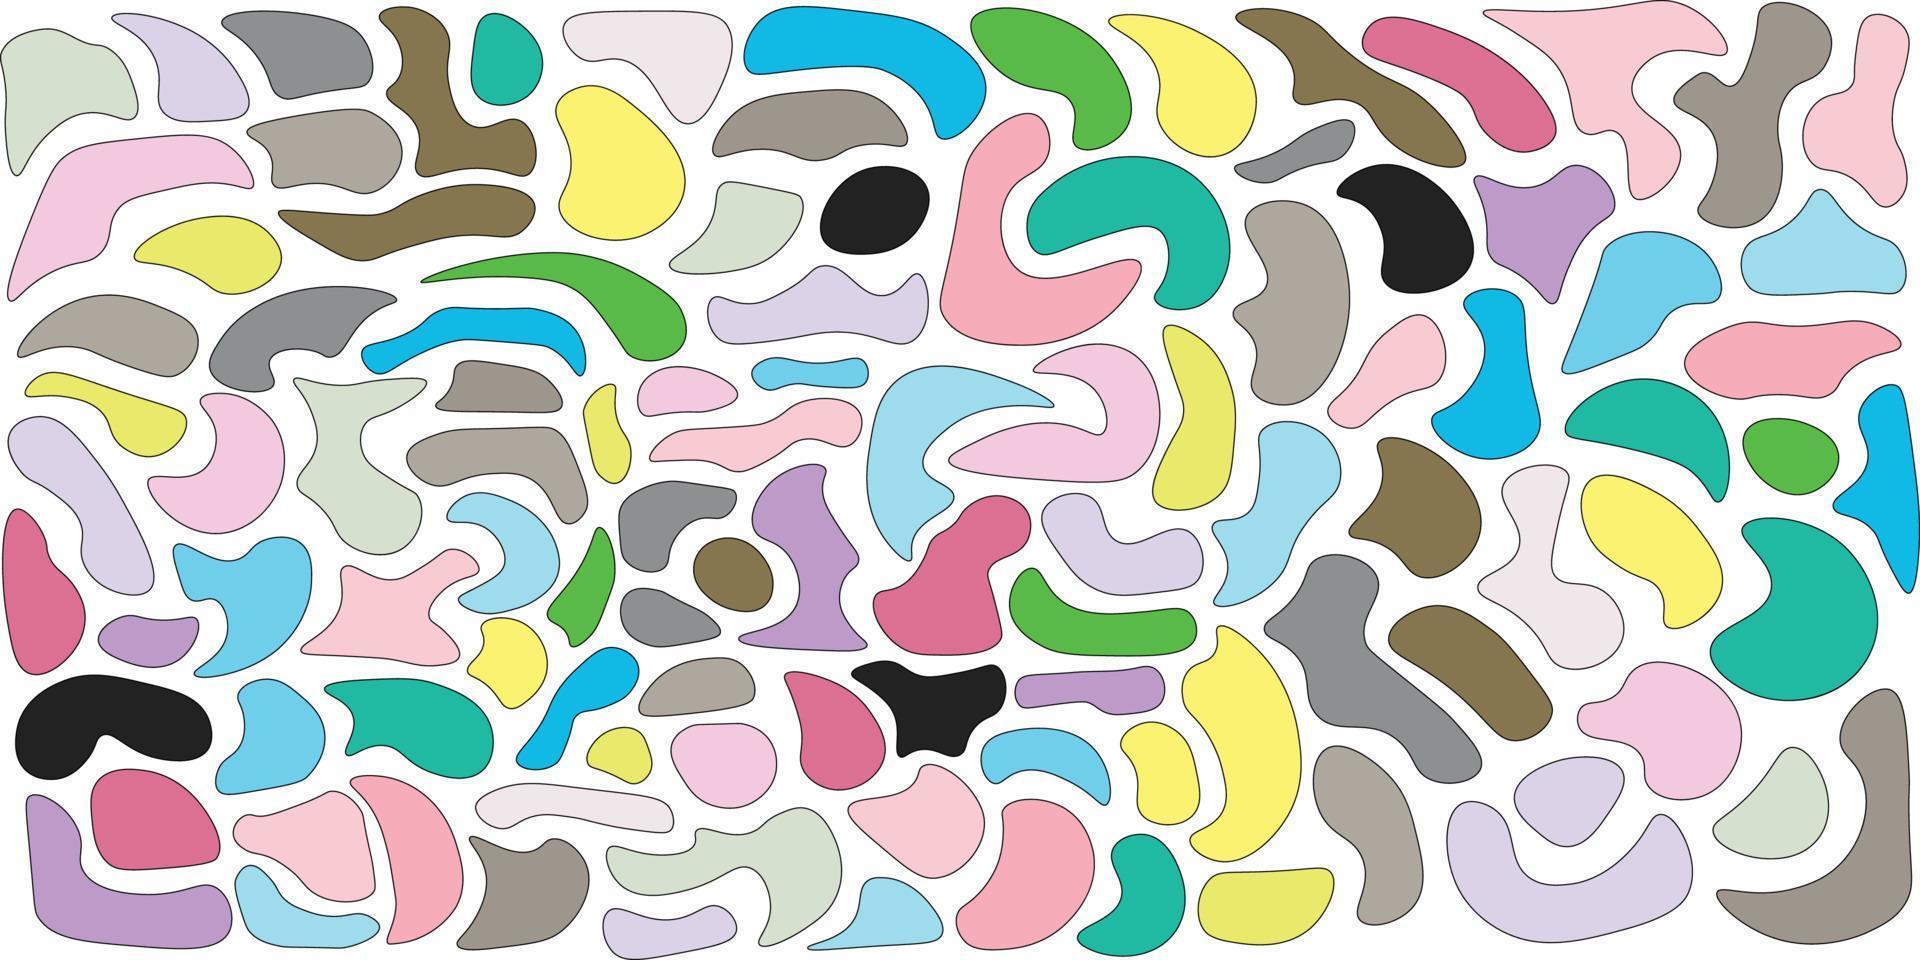 abstrakter Musterhintergrund mit verschiedenen abstrakten Formen mit vielen Pastellfarben vektor